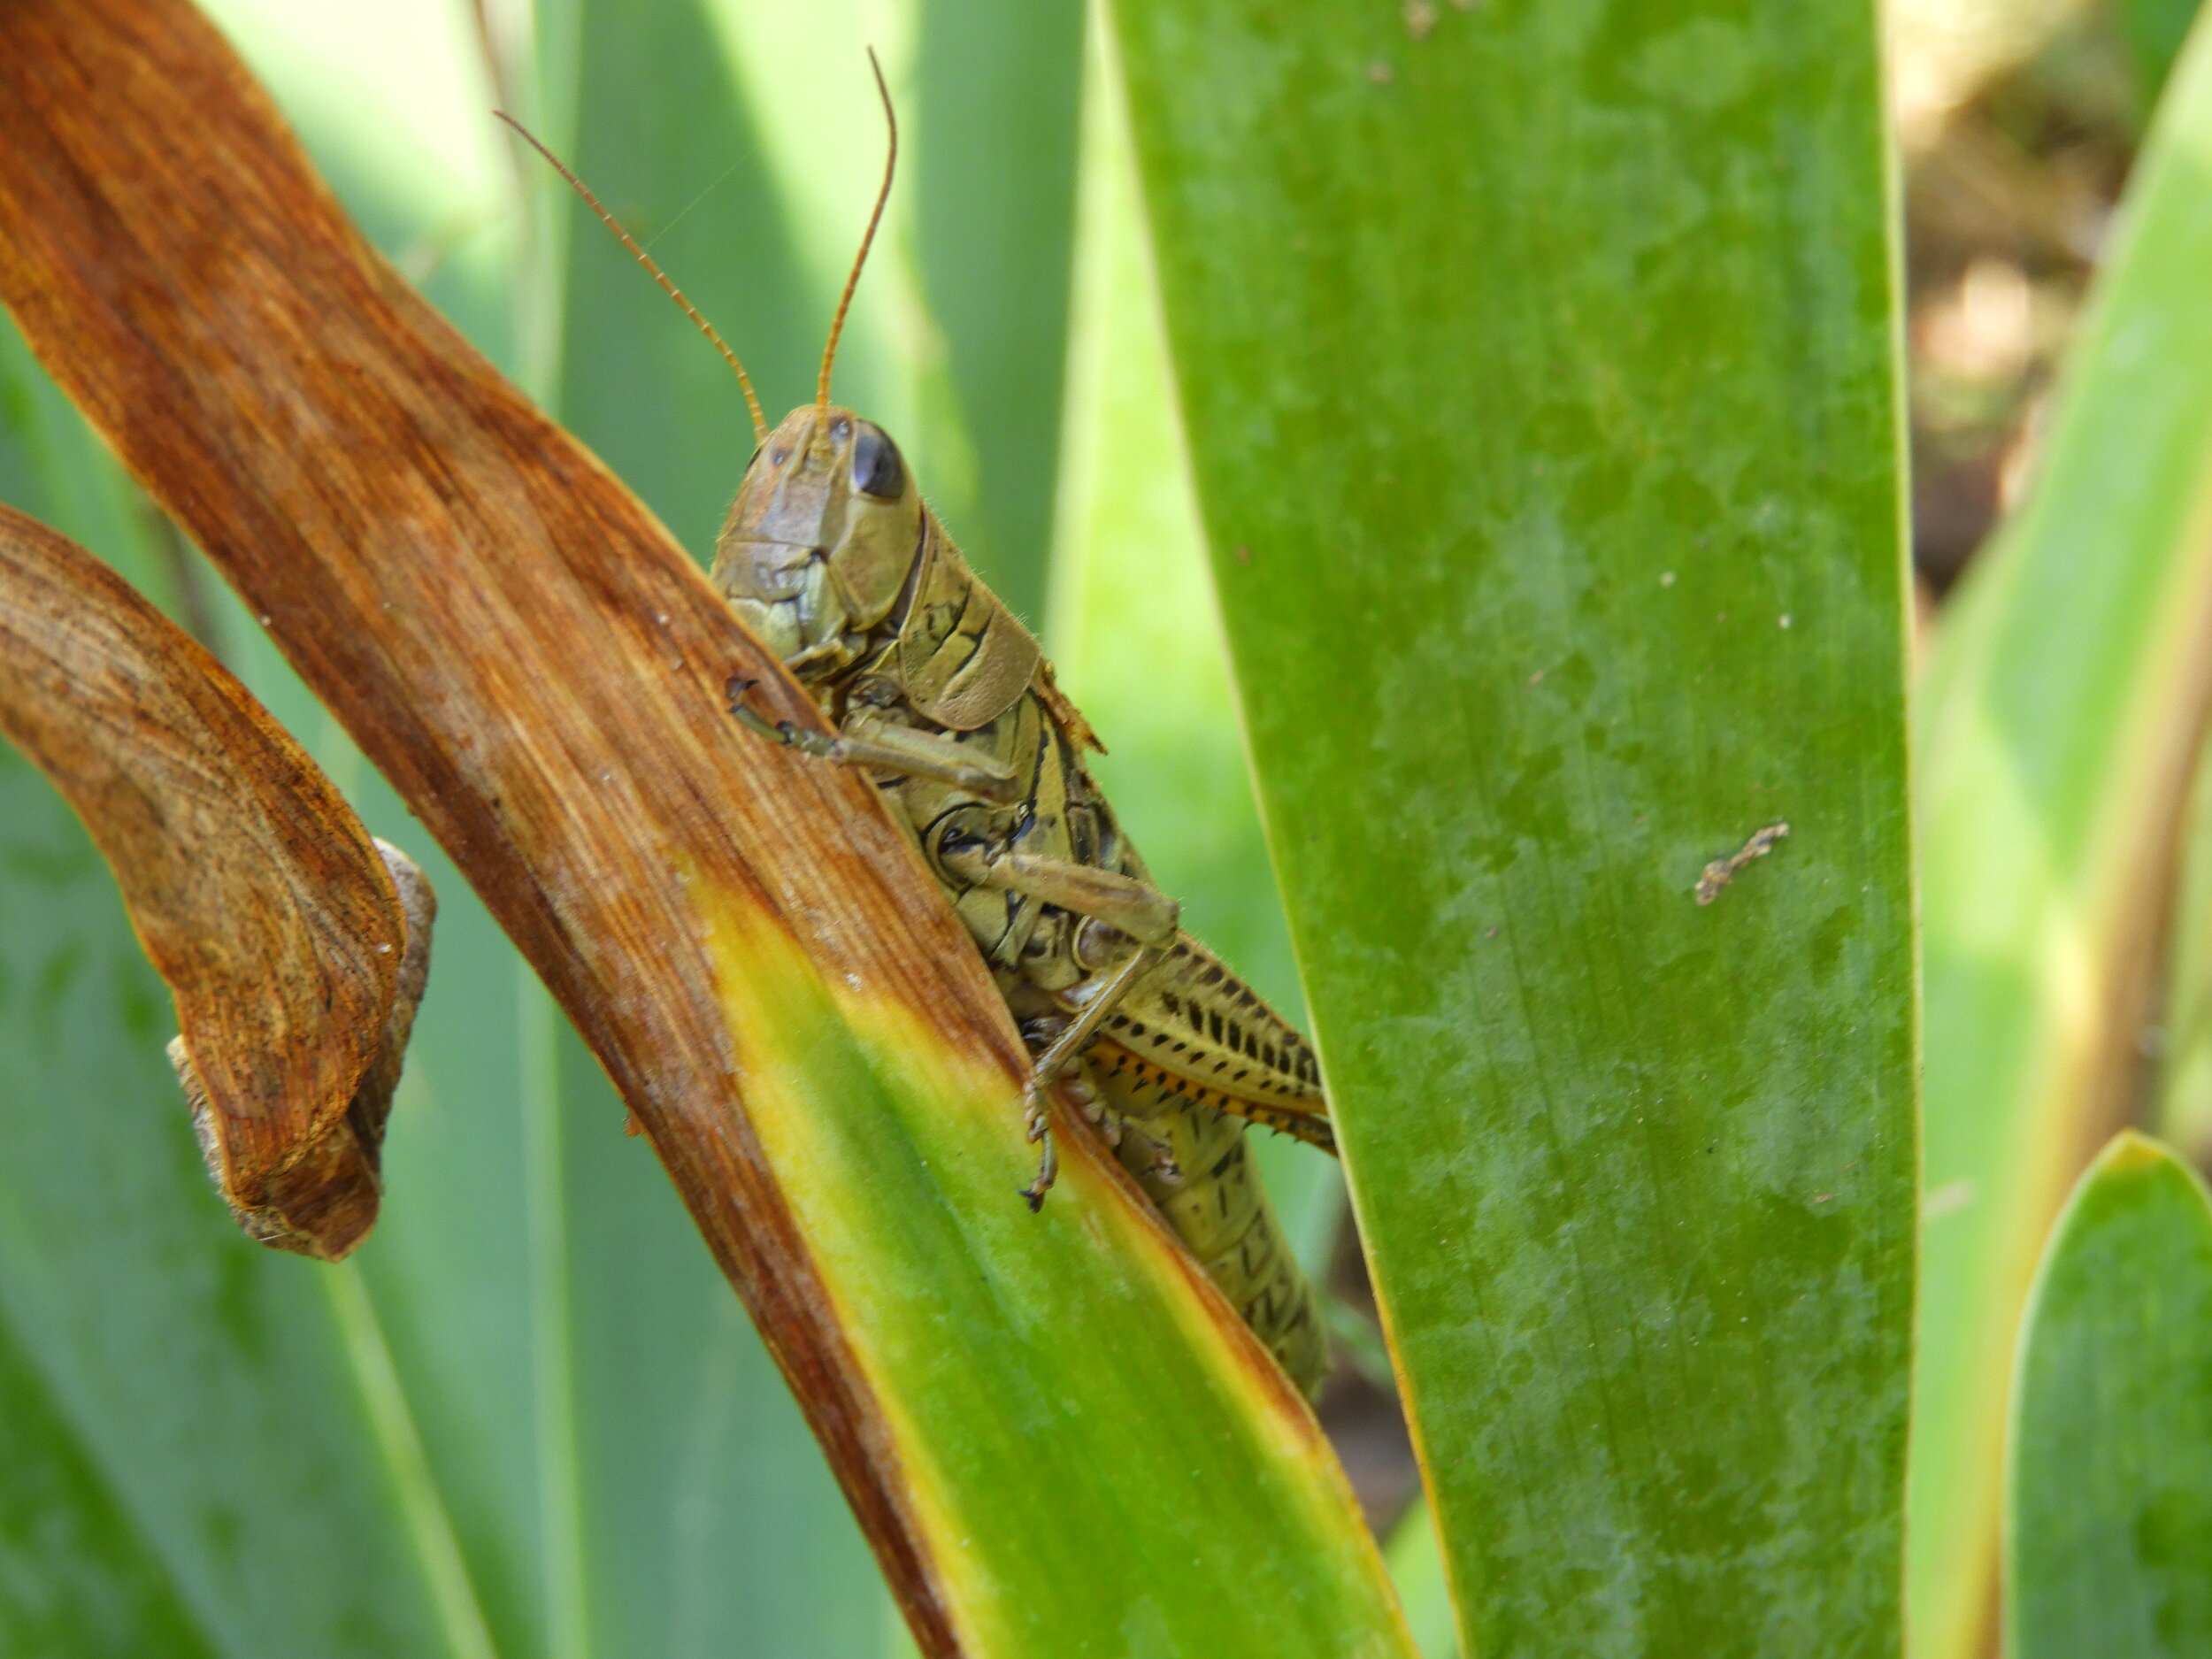 Grasshopper on a leaf